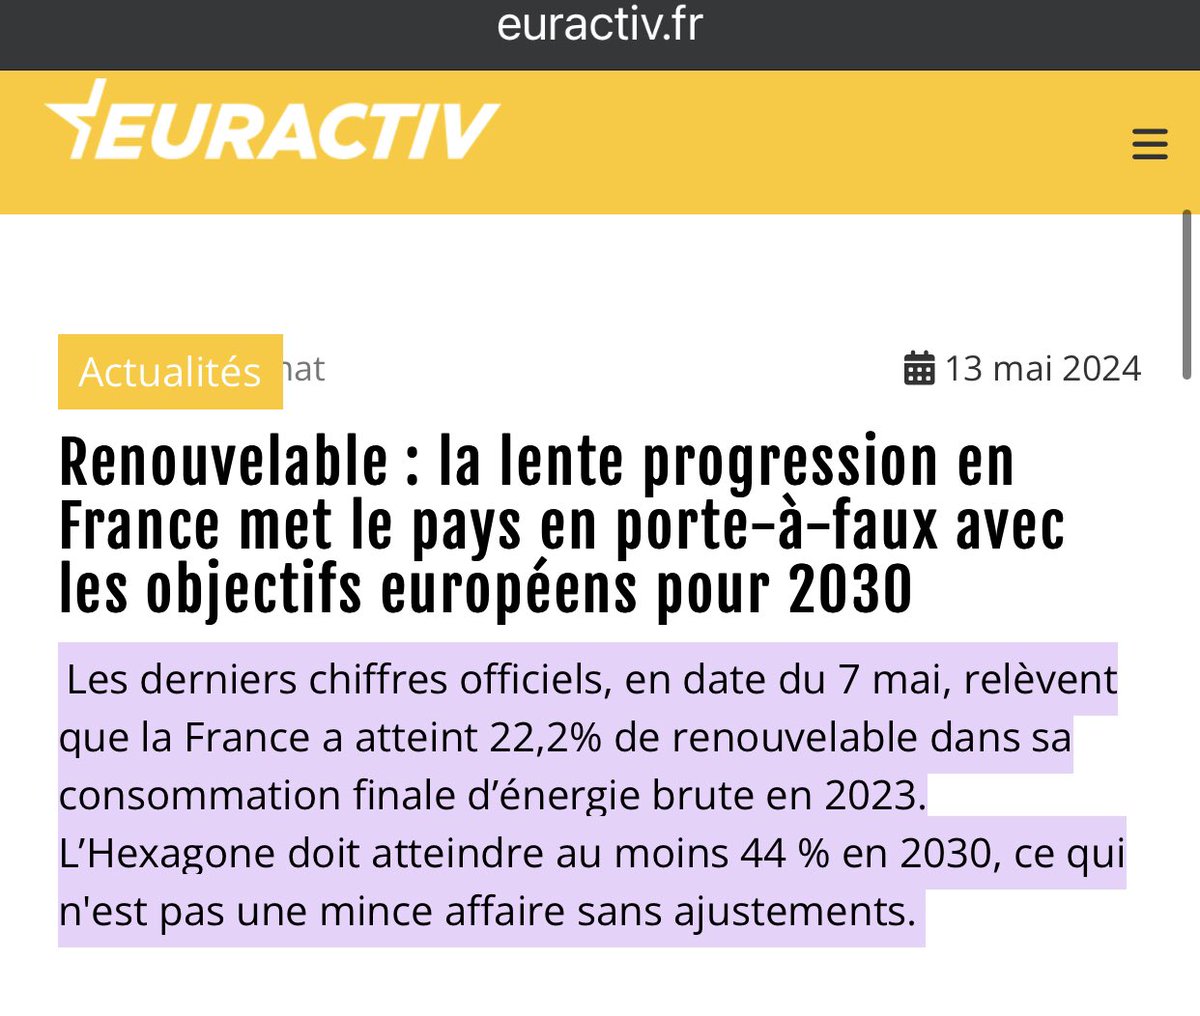 @FabienBougle Quand tu penses que la France doit doubler la part des énergies renouvelables pour atteindre 44% en 2030 !